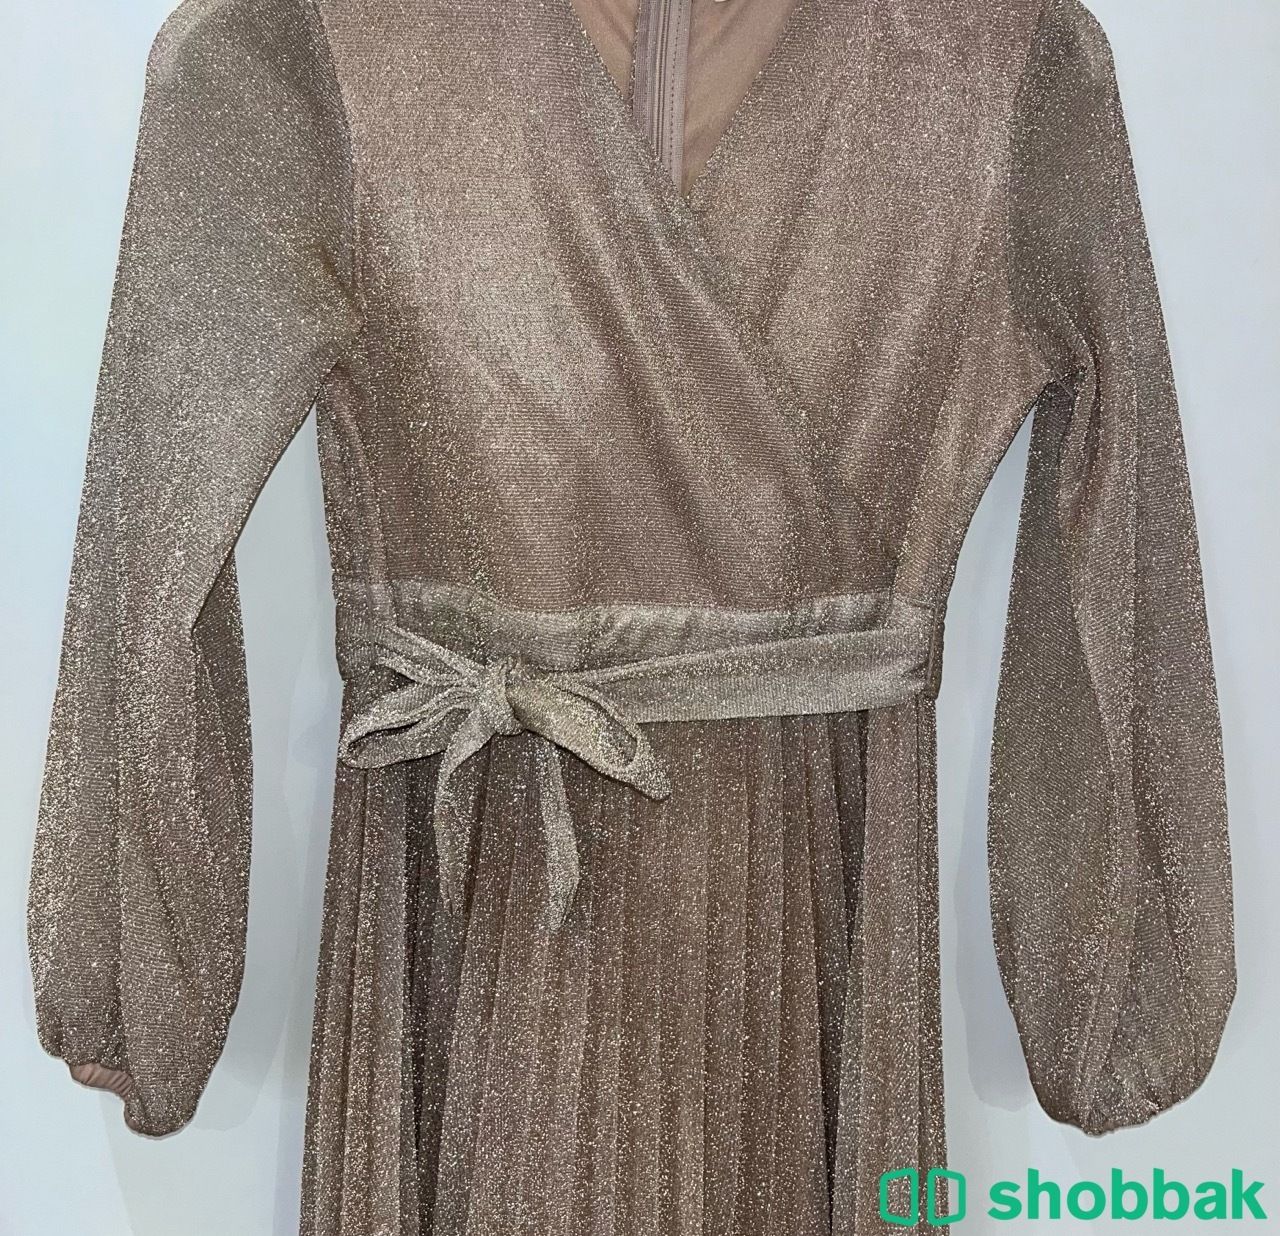 فستان ممتاز للبيع Shobbak Saudi Arabia